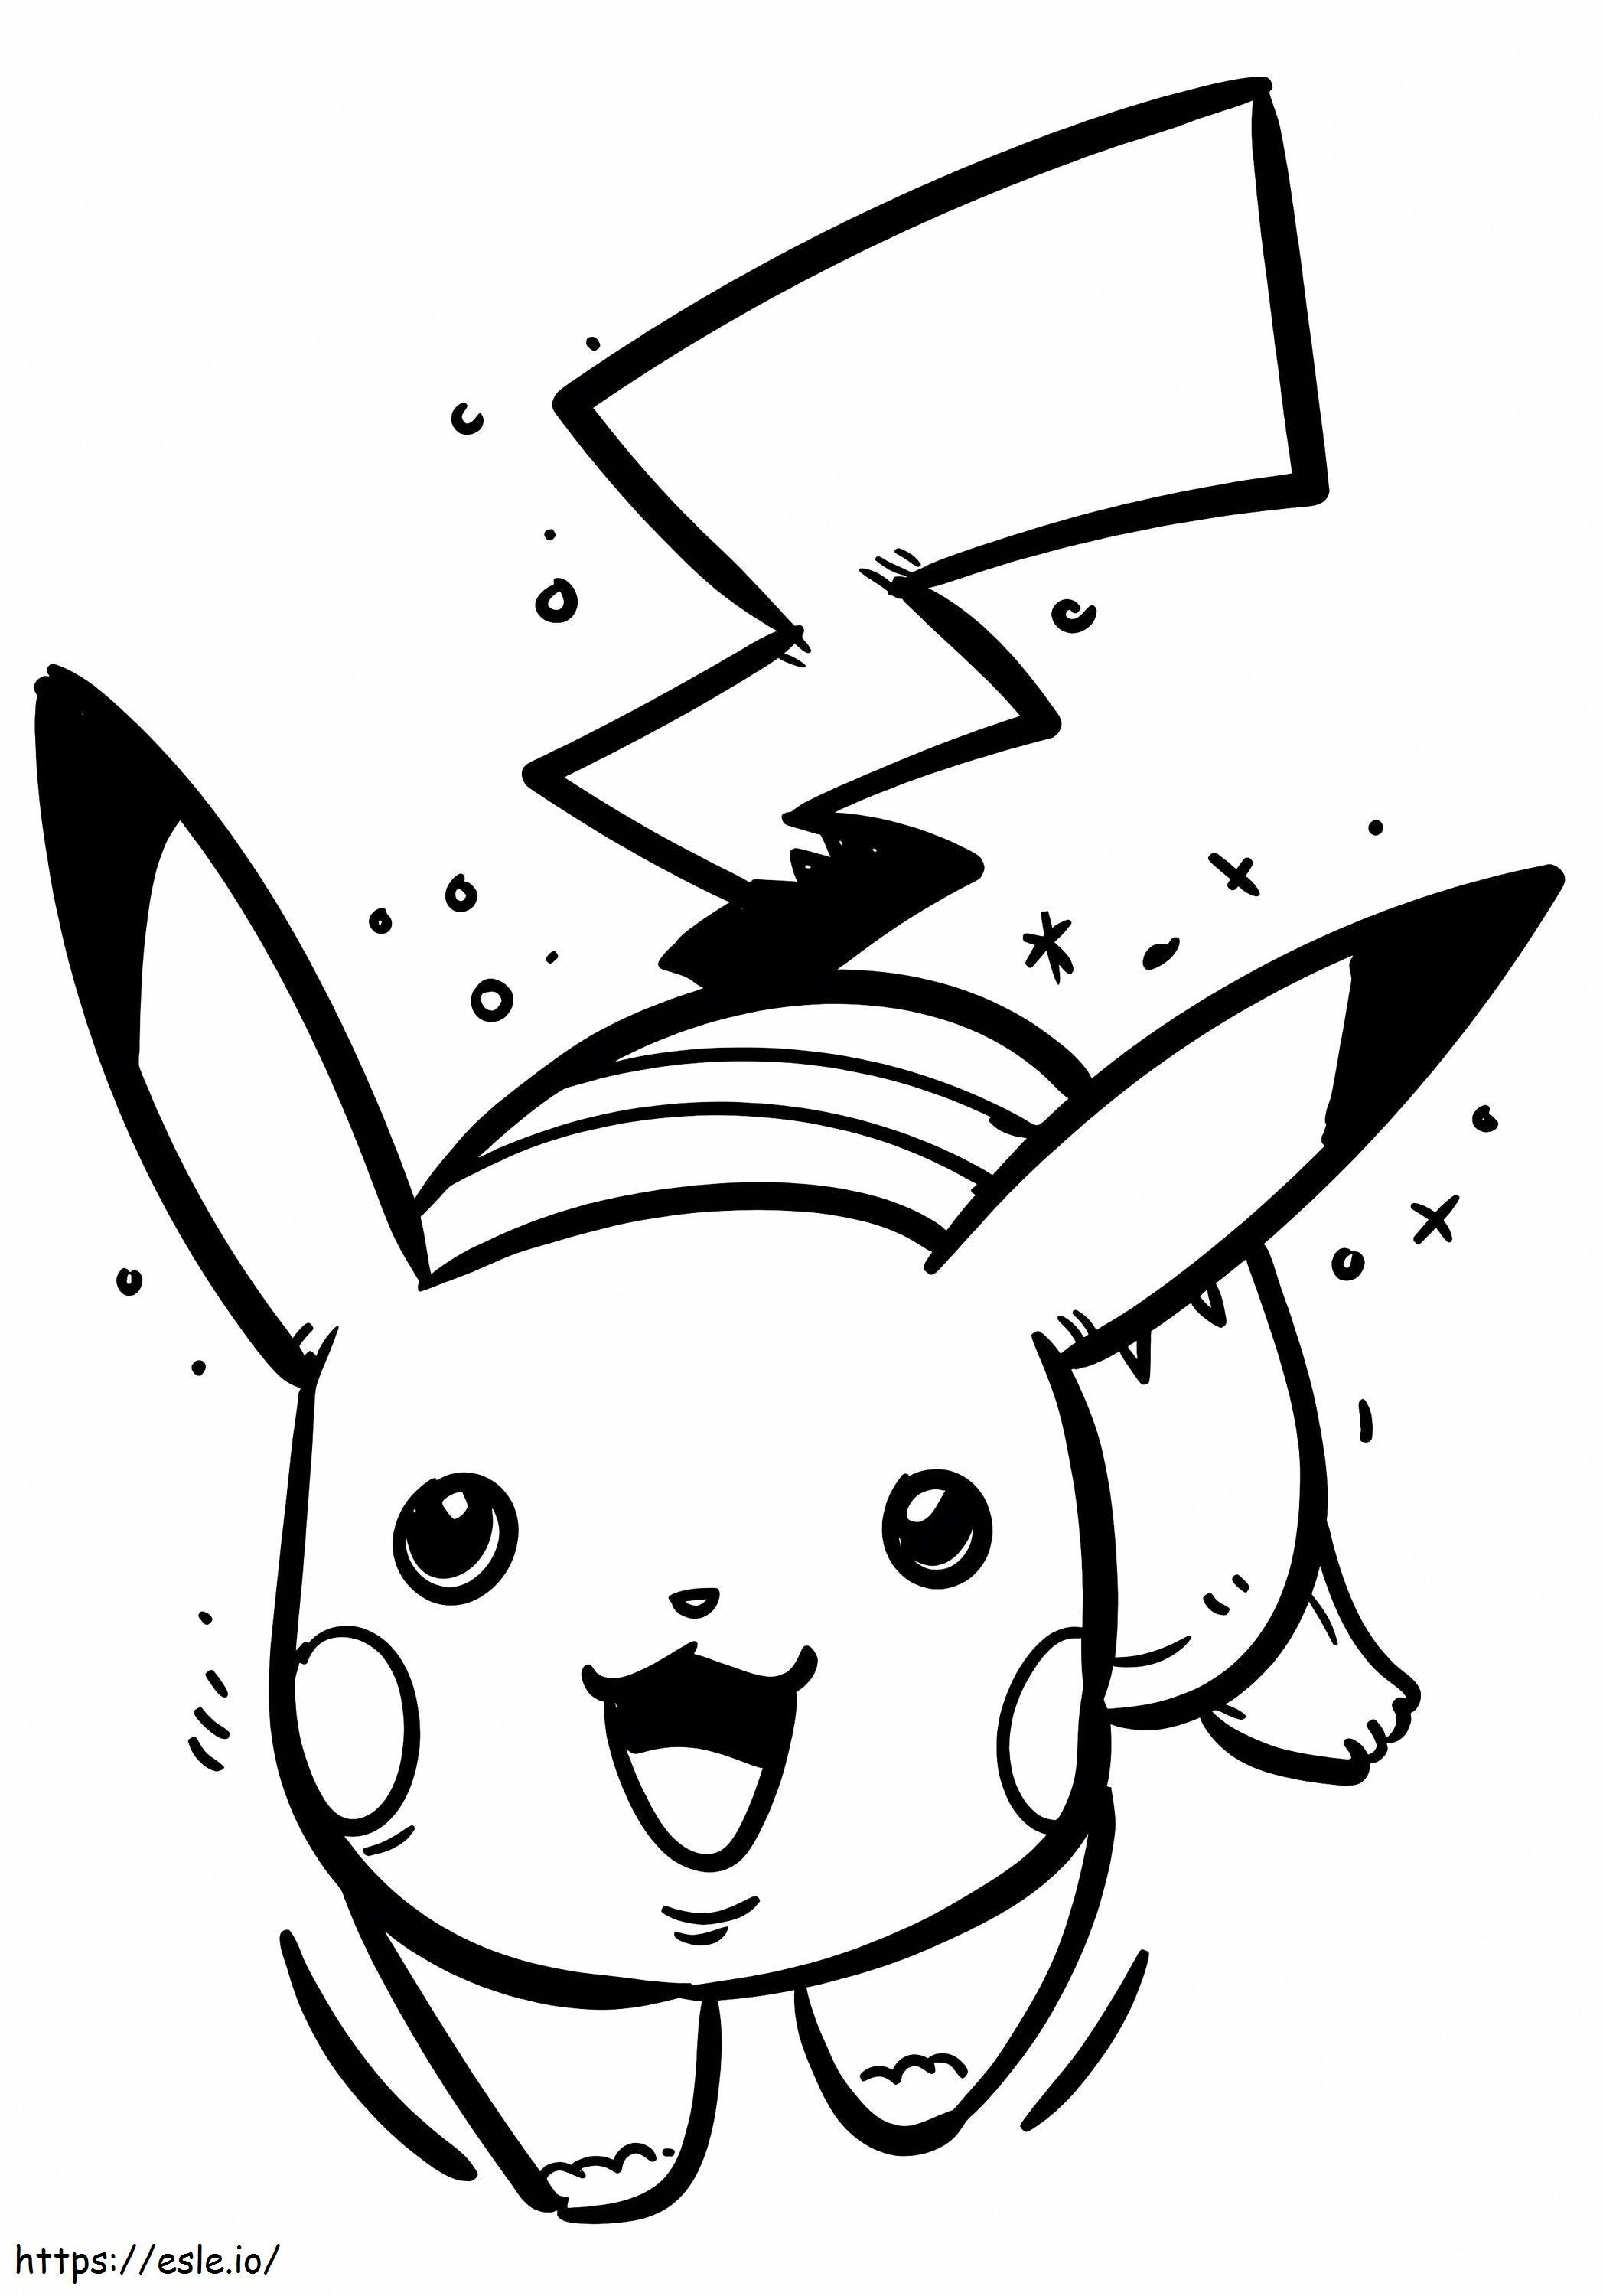 Coloriage Pikachu en cours d'exécution 715X1024 à imprimer dessin